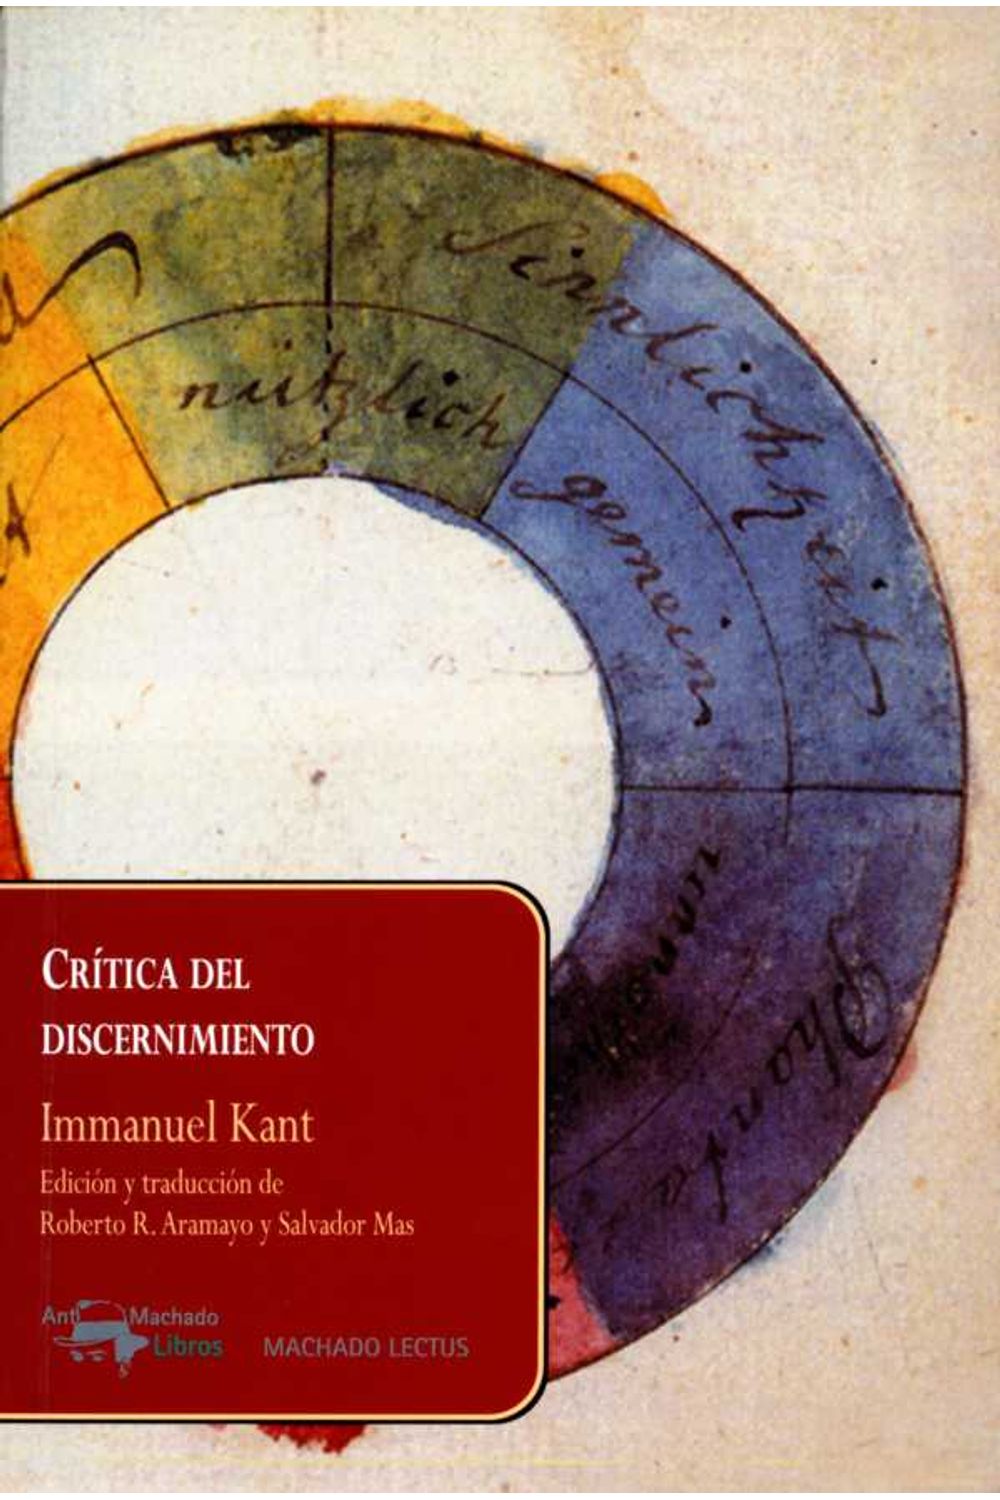 bw-criacutetica-del-discernimiento-antonio-machado-libros-9788491143147